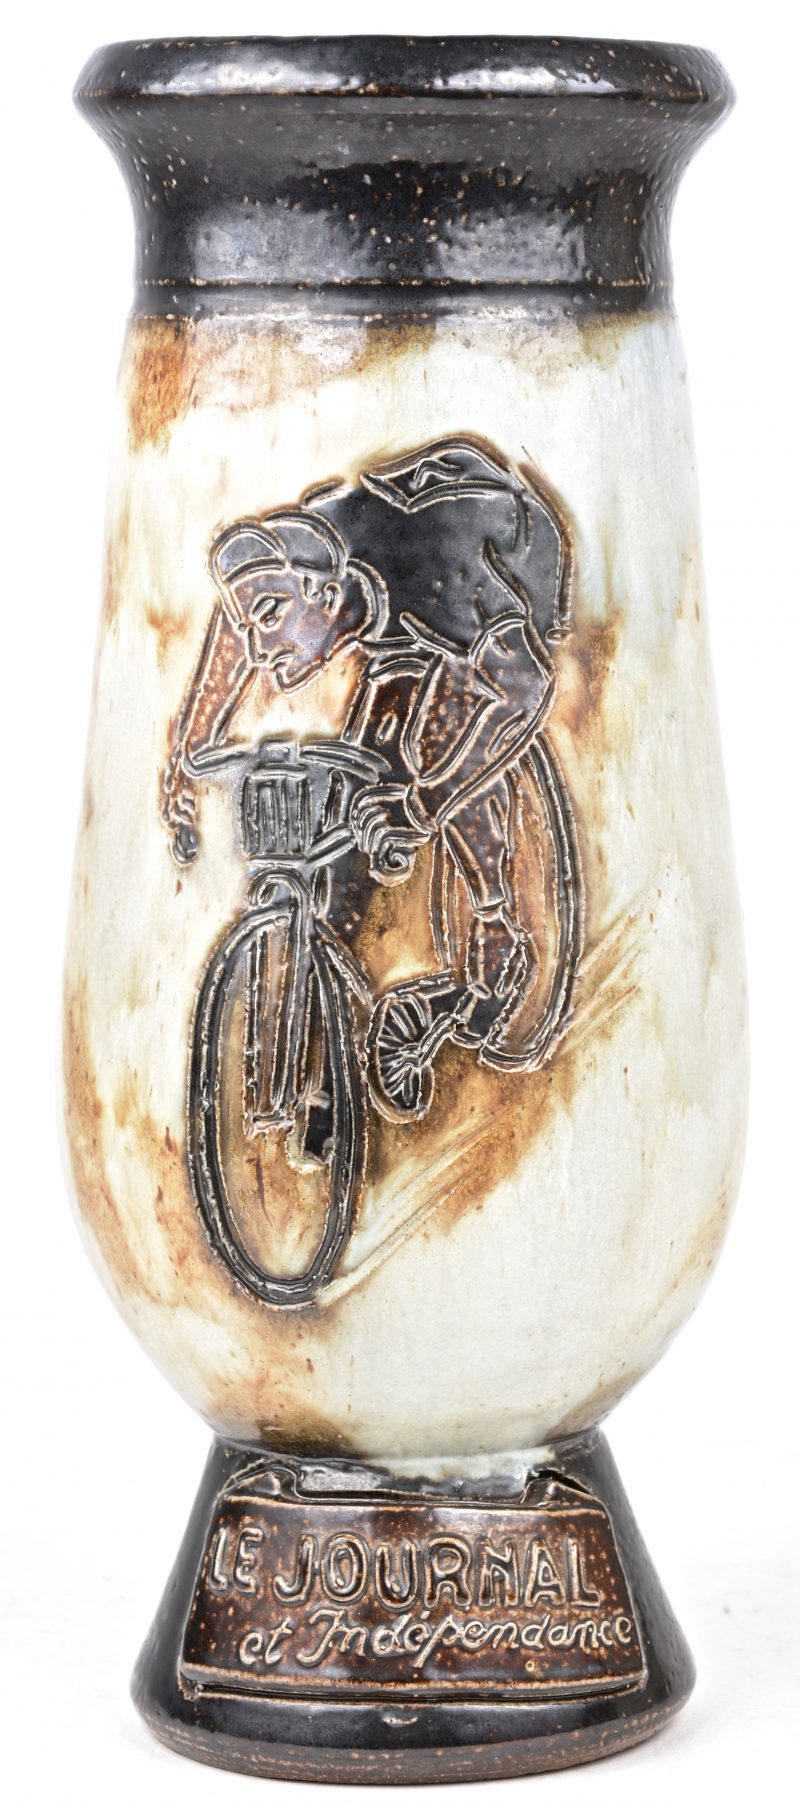 Een aardewerken vaas van ‘Le Journal et indépendance’ met een wielrenner in het decor